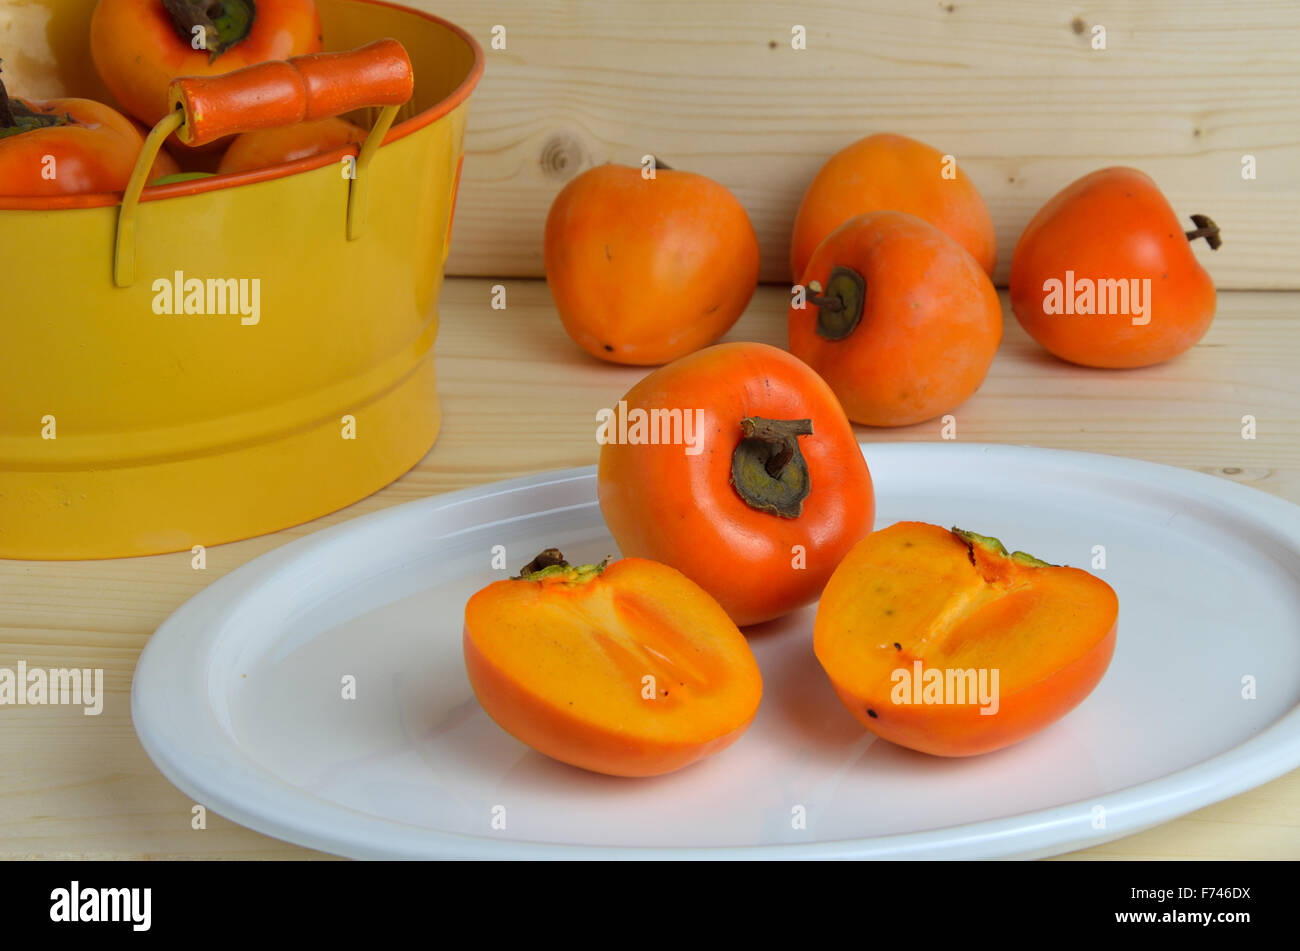 Kaki pomme sur l'assiette blanche et orange tin coupe de fruits en arrière-plan Banque D'Images